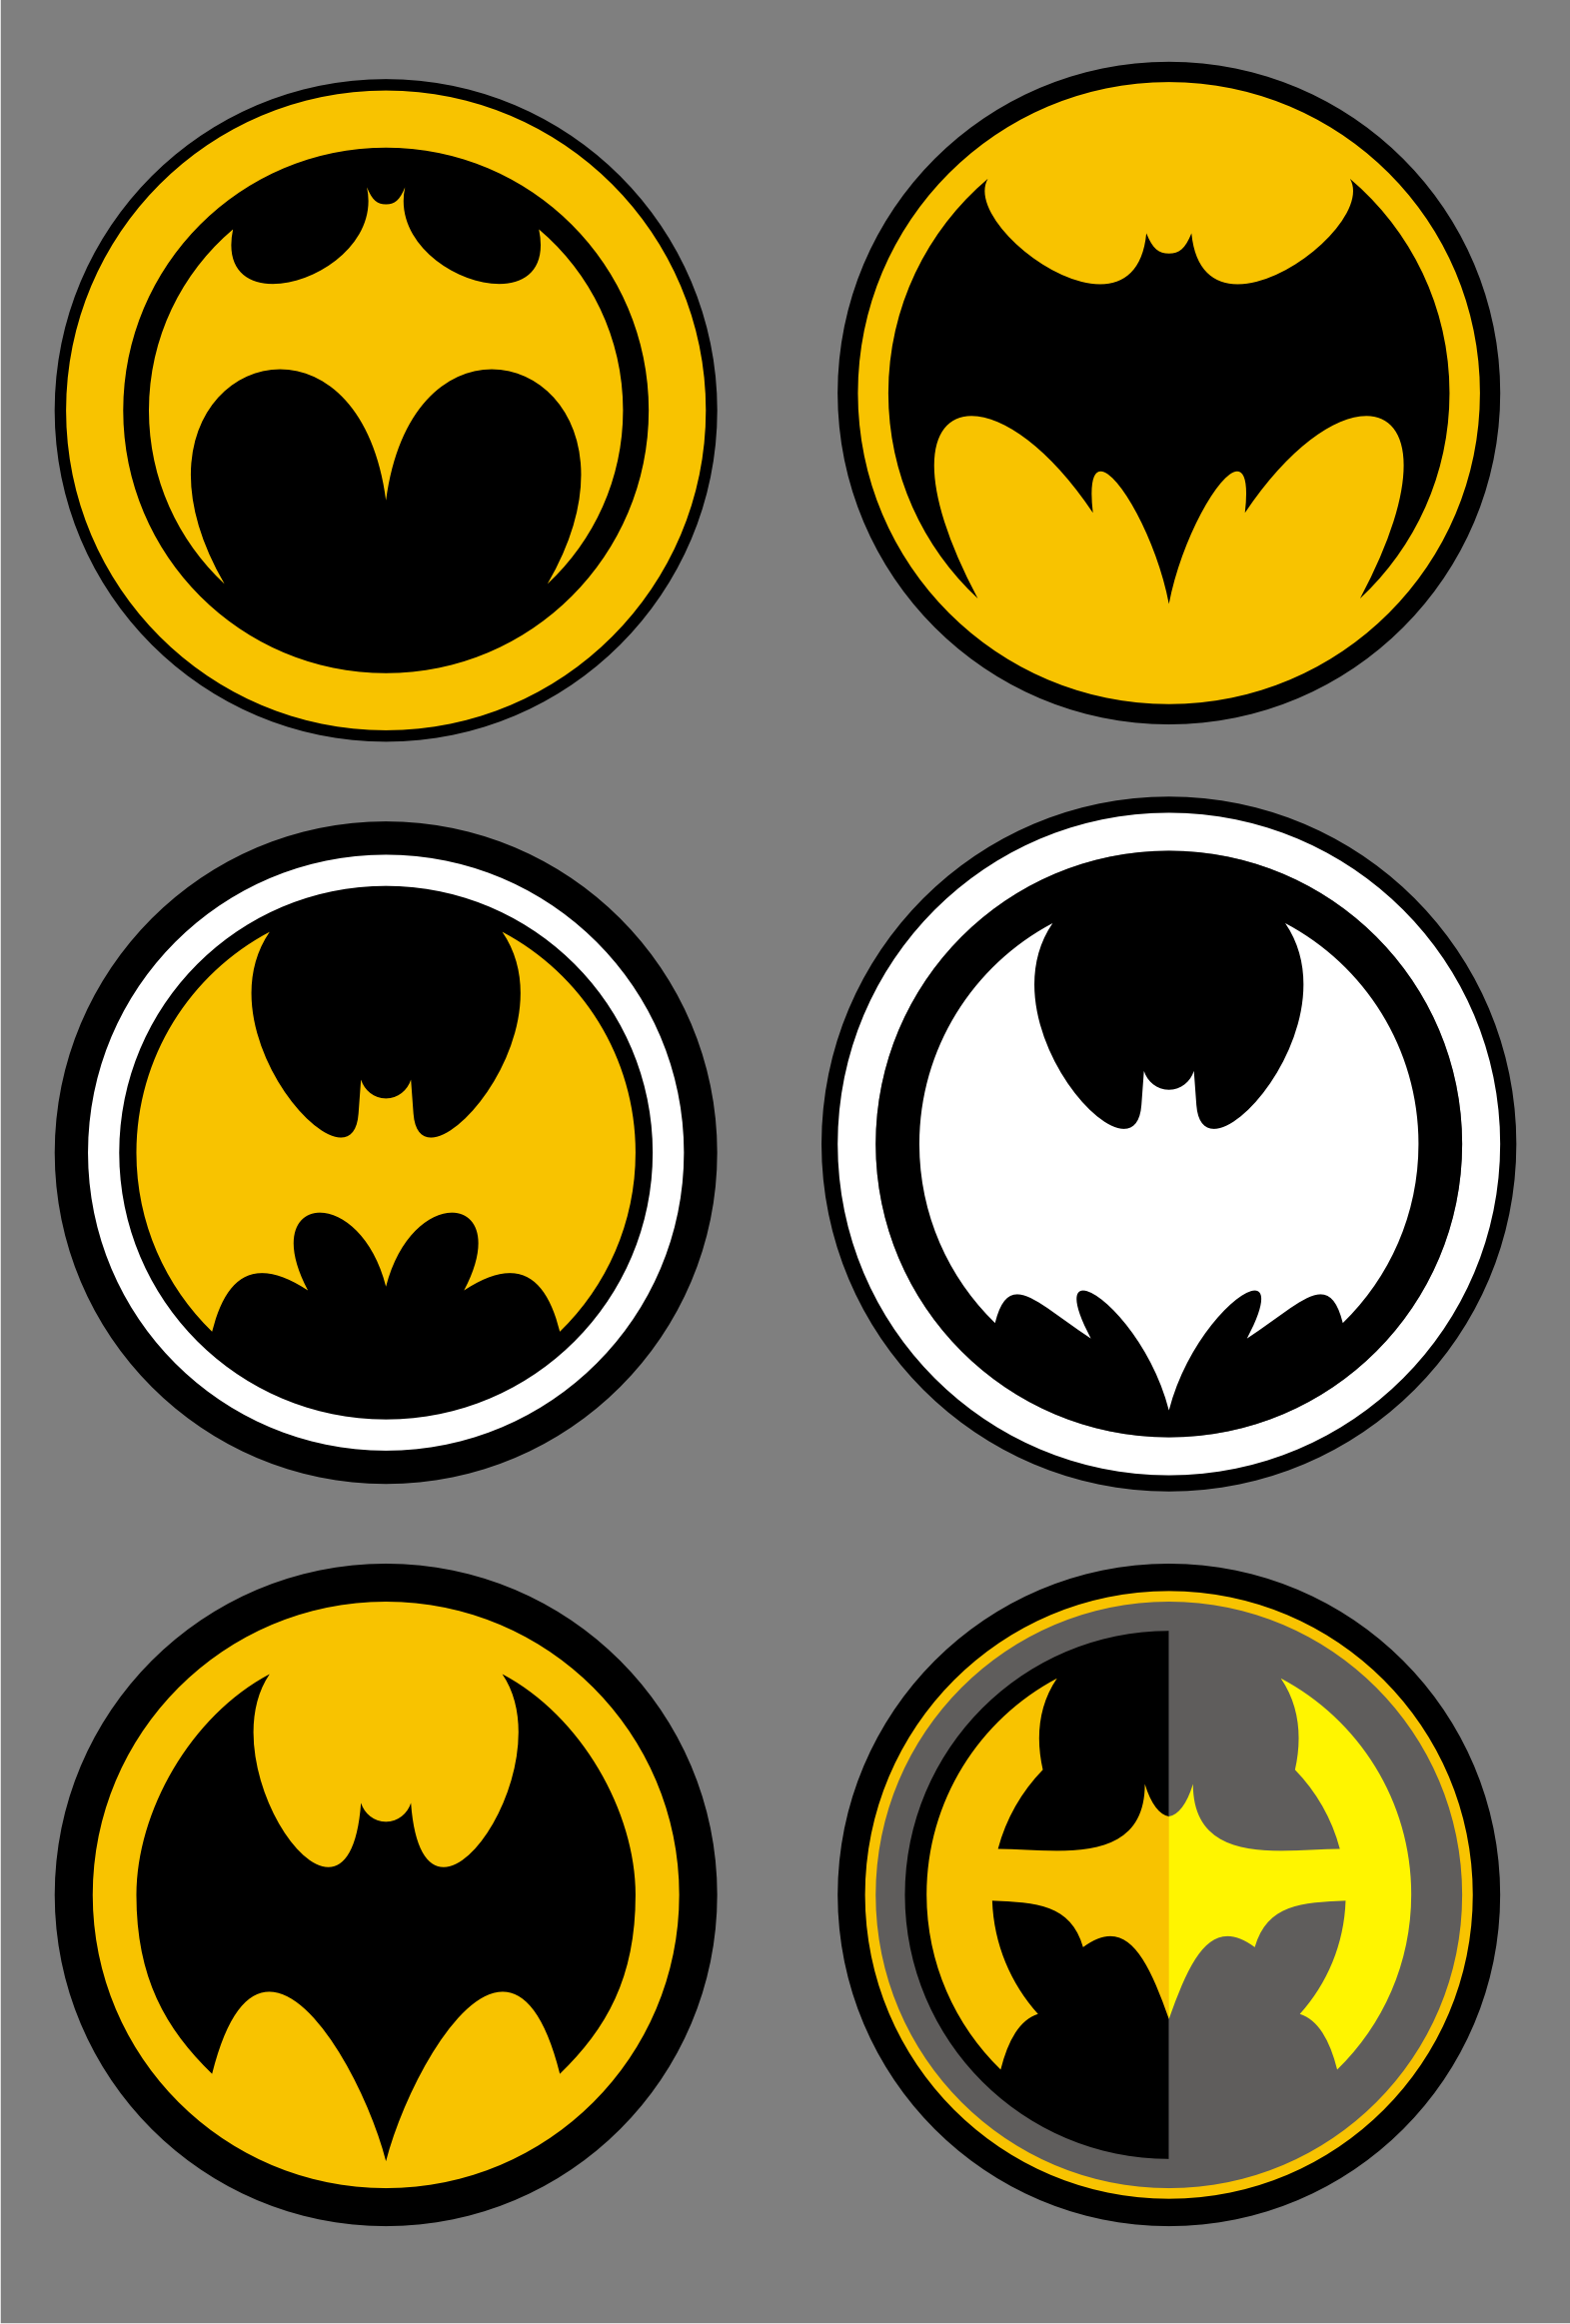 Batman Logos and Batman fan art - ClipArt Best - ClipArt Best